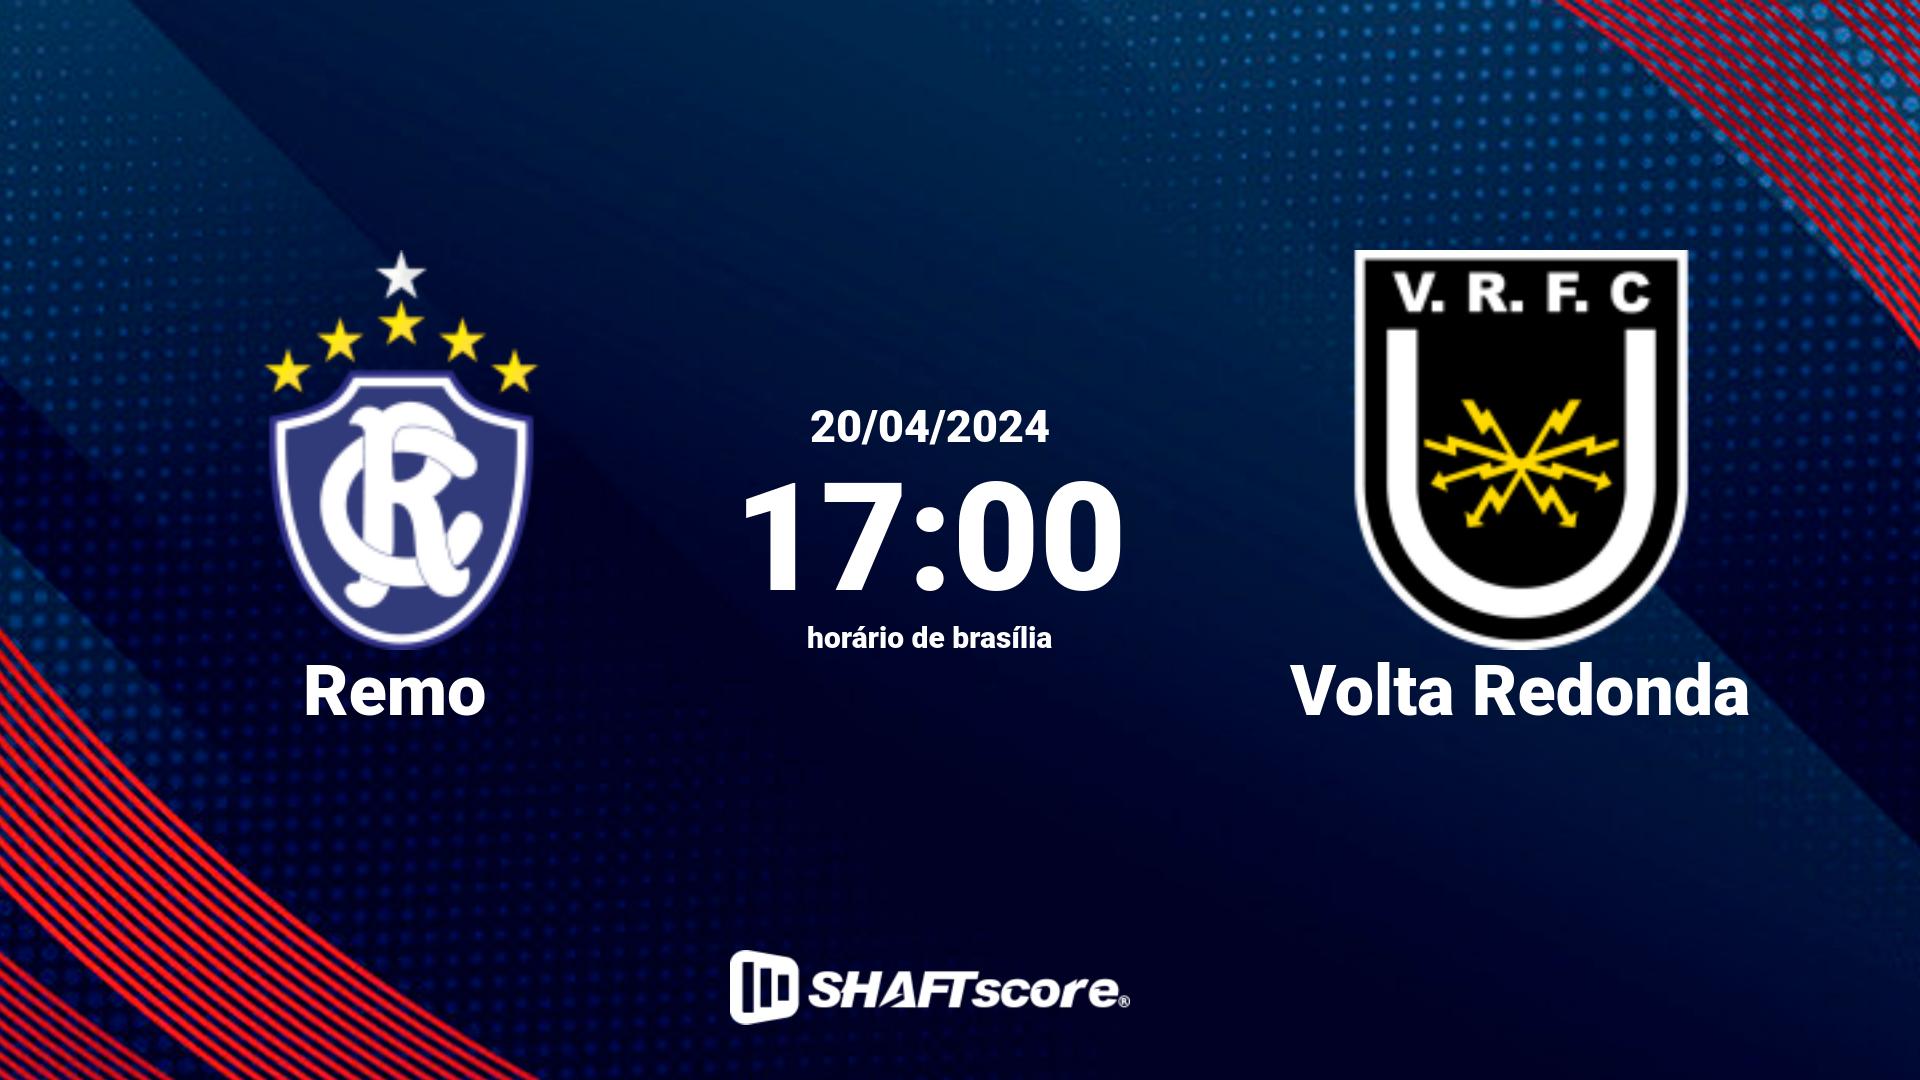 Estatísticas do jogo Remo vs Volta Redonda 20.04 17:00